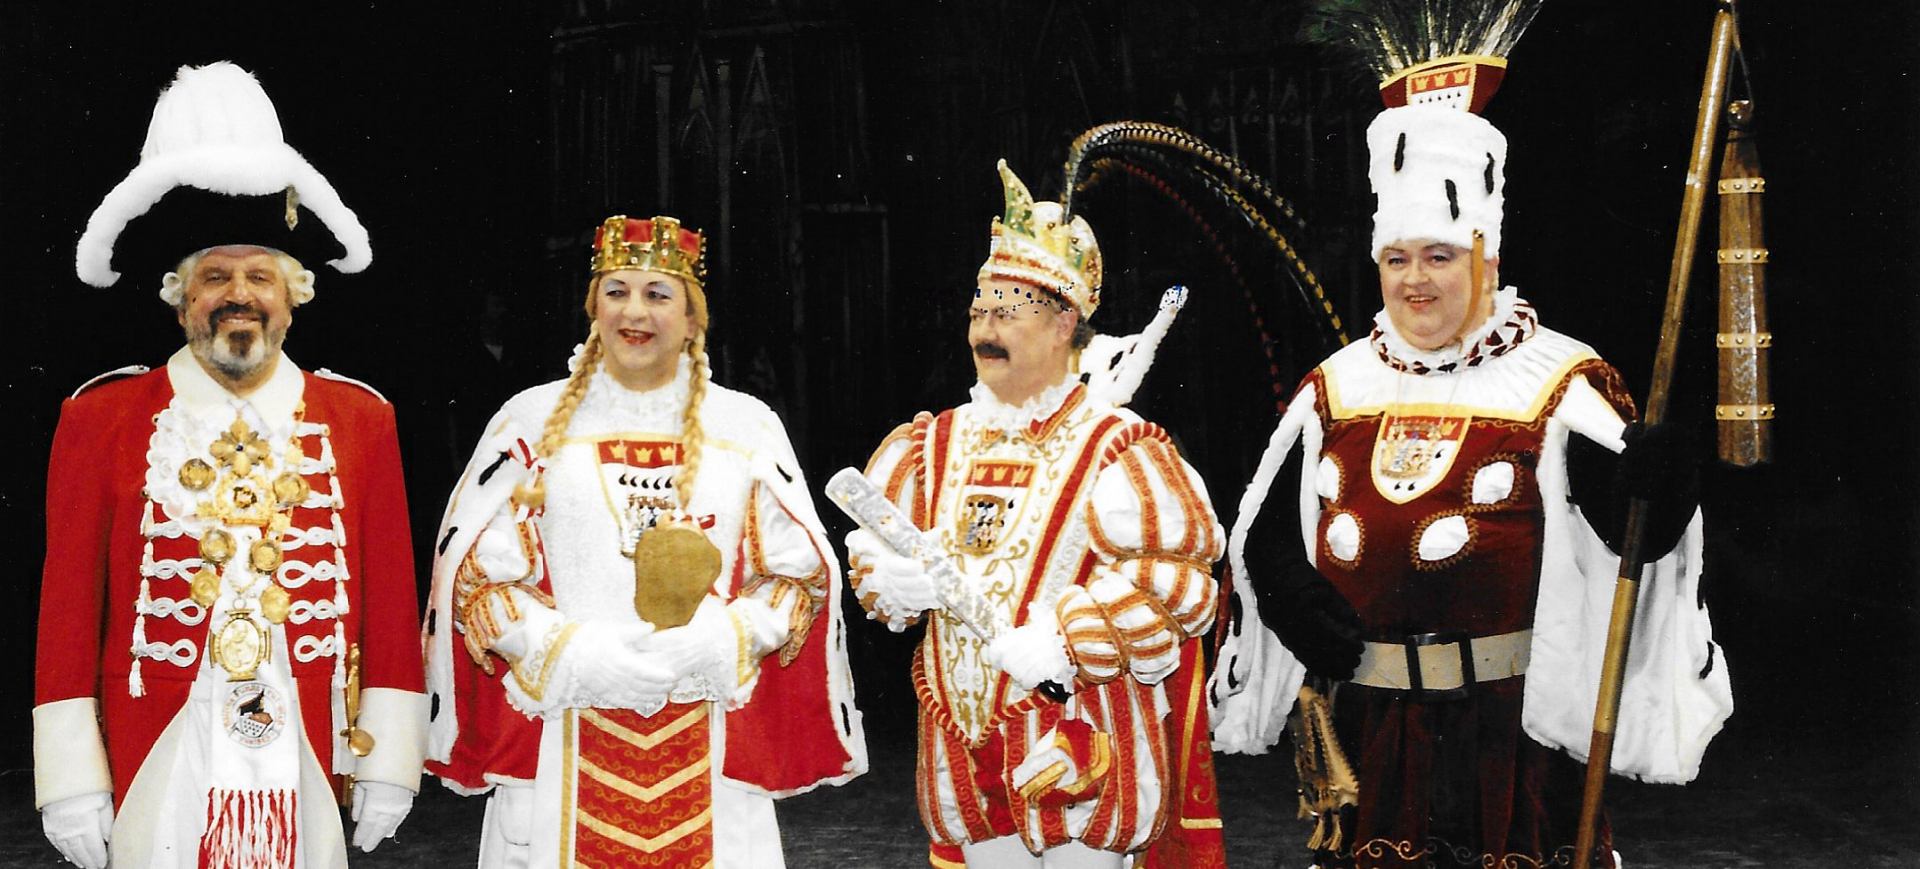 Dat hätt jefunk! - Divertissementchen 1998 - Gesangsensemble als Kölner Karnevalisten